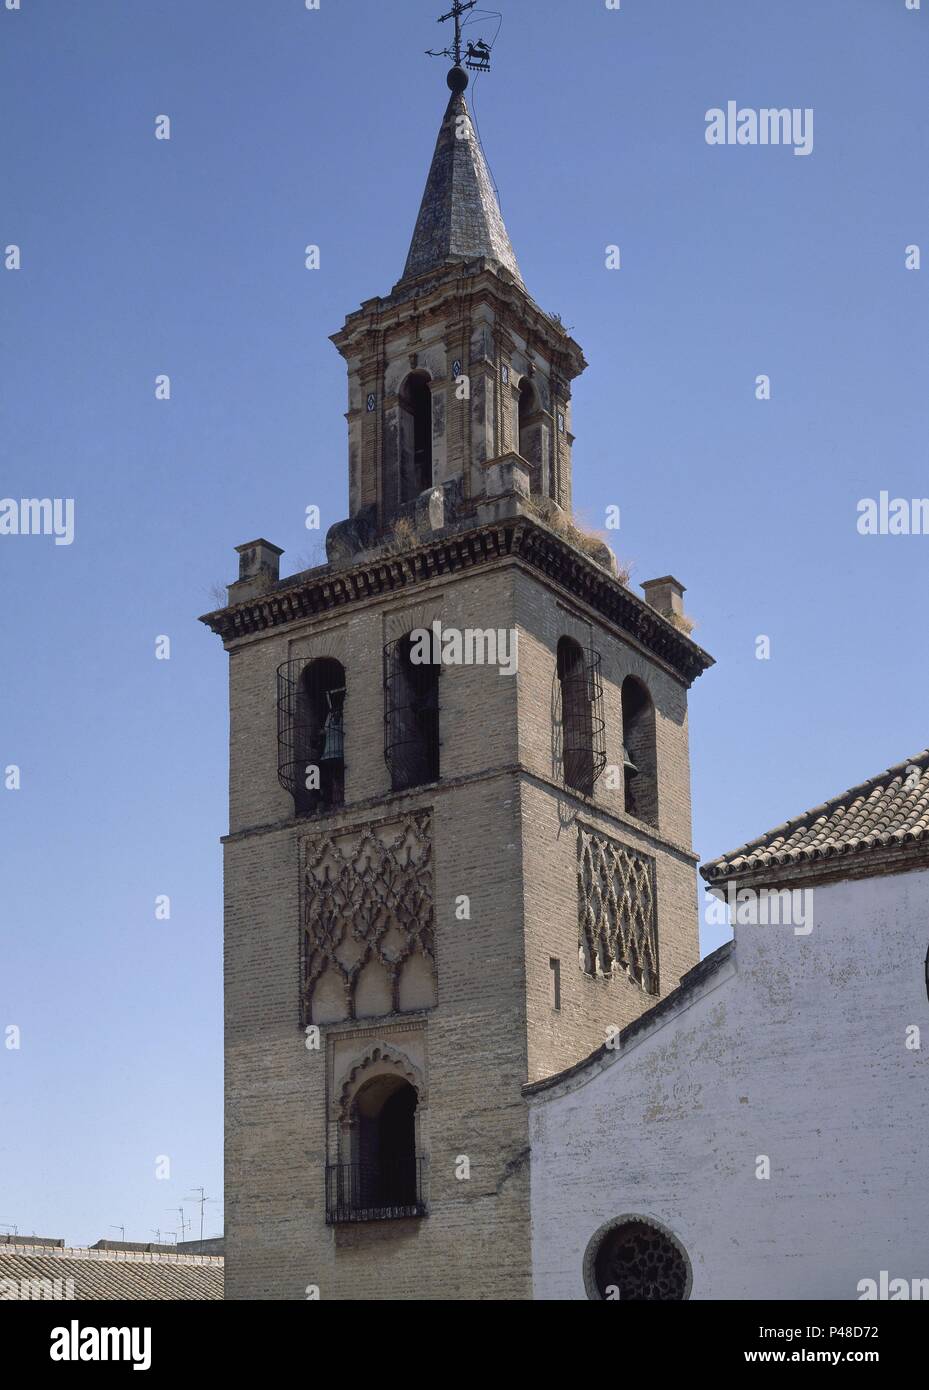 TORRE ALMINAR ALMOHADE-1257-CON DECORACION DE SEBKA-INFLUENCIA DE LA GIRALDA. Location: IGLESIA DE OMNIUM SANCTORUM, SPAIN. Stock Photo